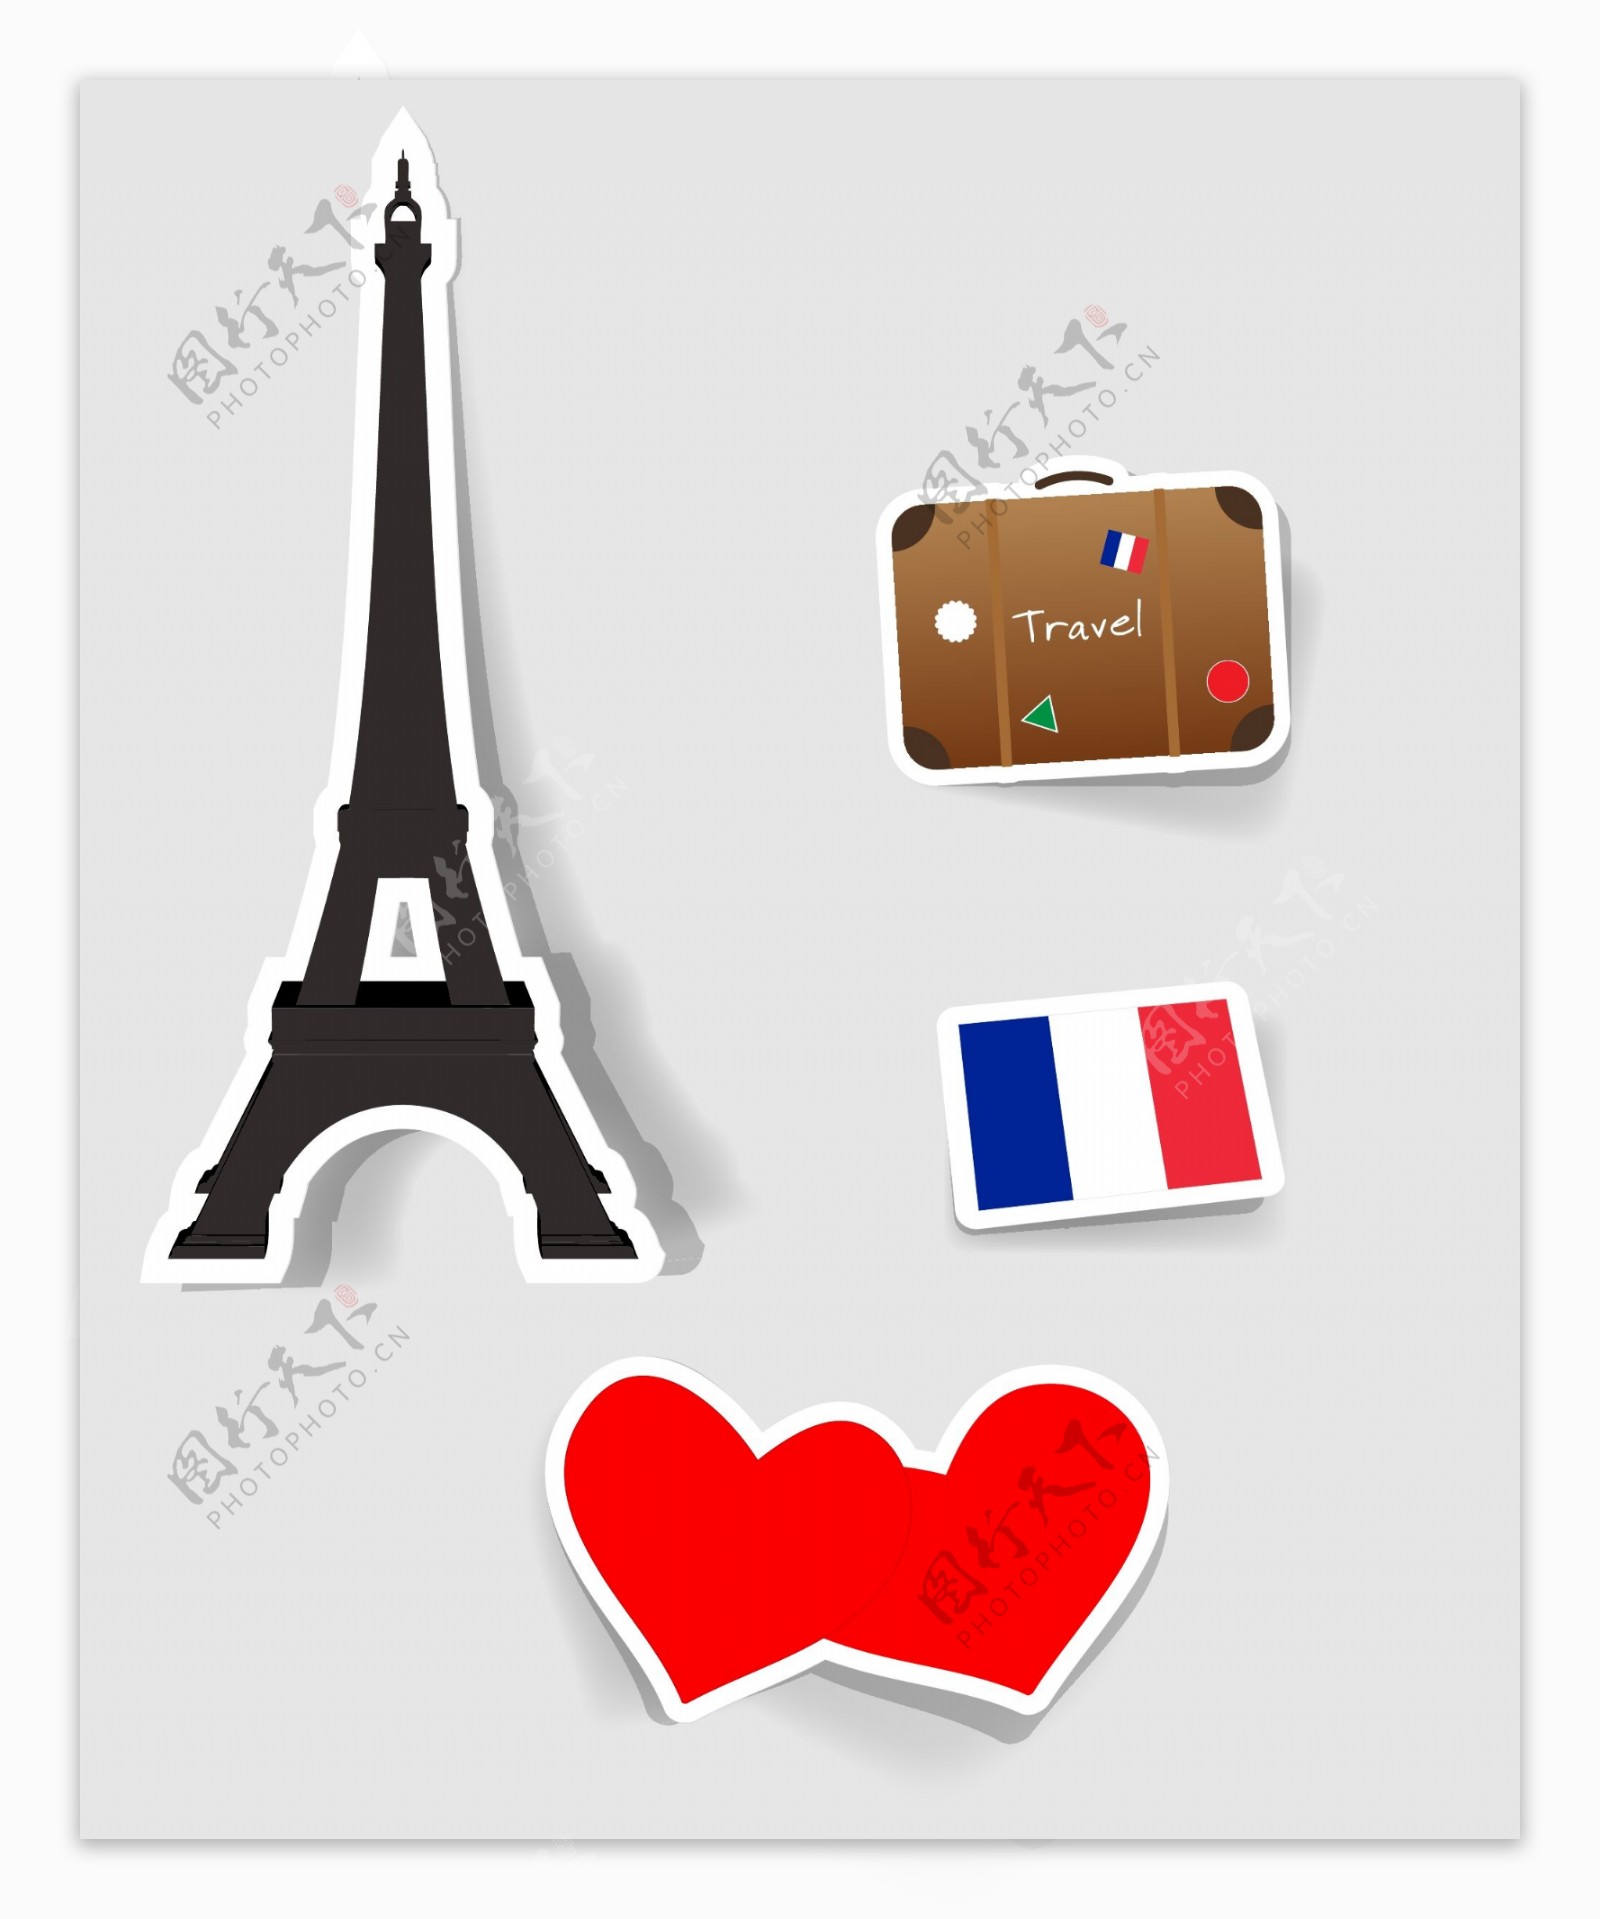 巴黎旅行图标设计素材模板下载